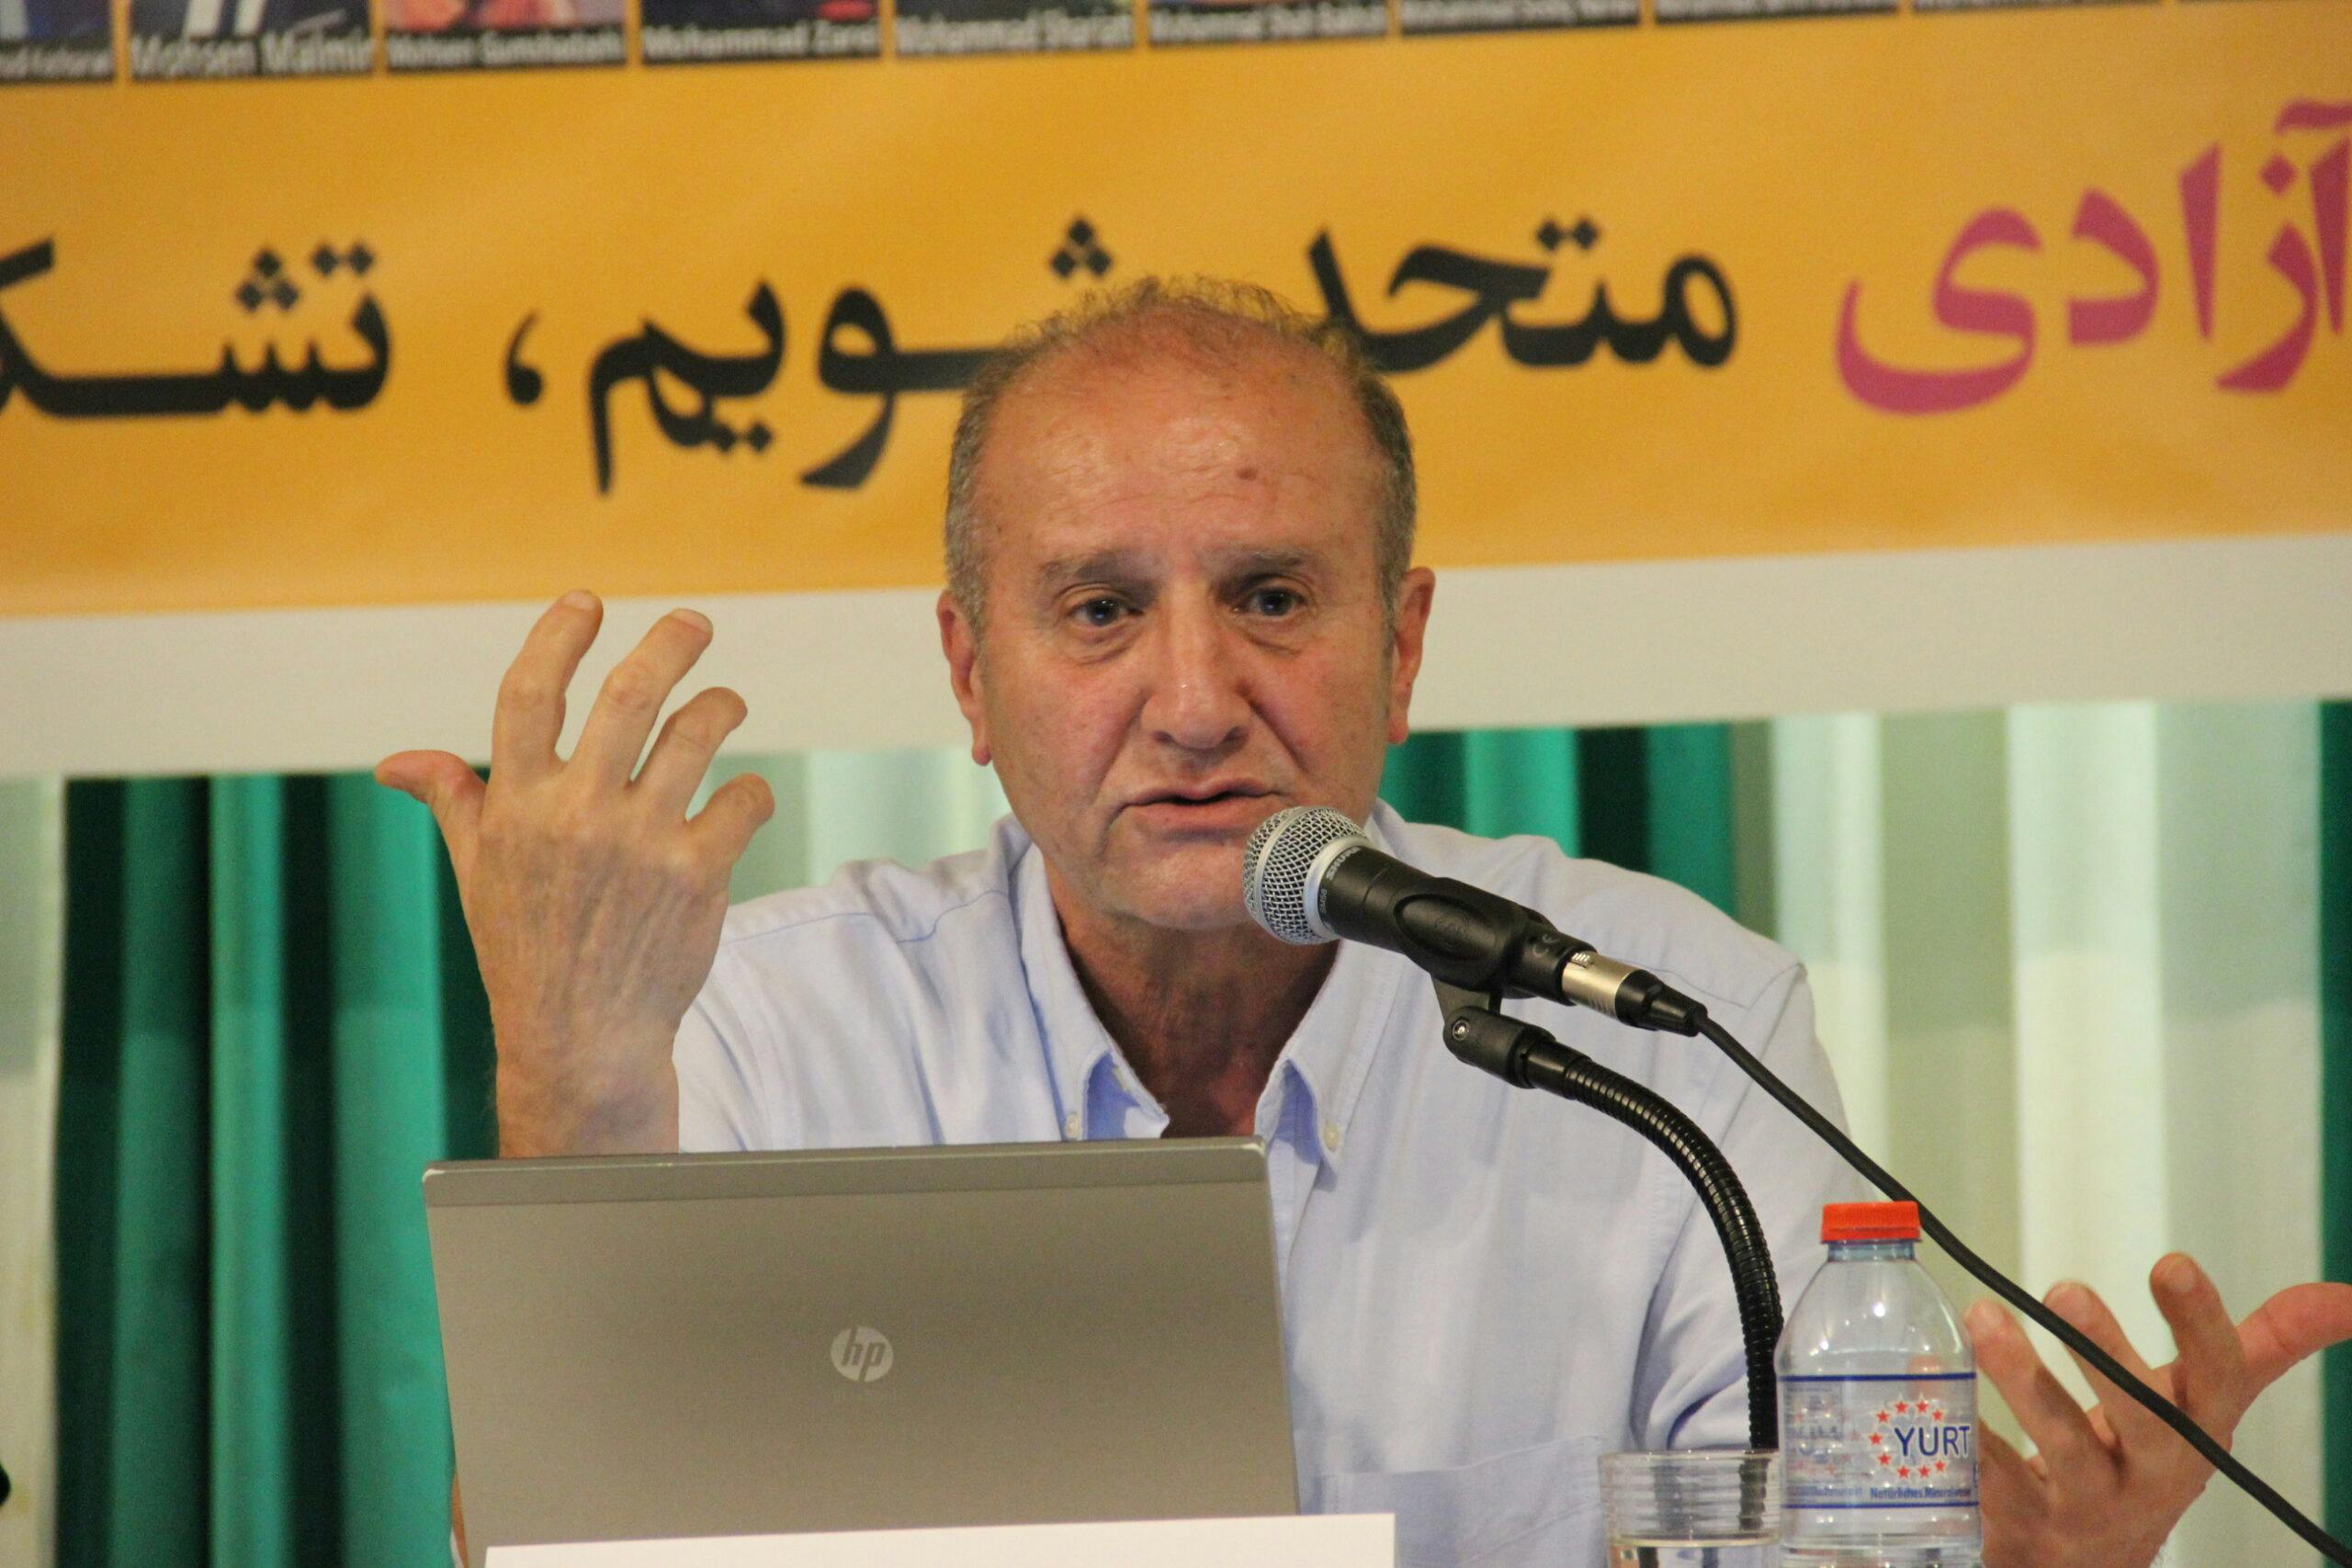 ستار رحمانی، استاد دانشگاه و فعال حقوق معلمان و کارگران